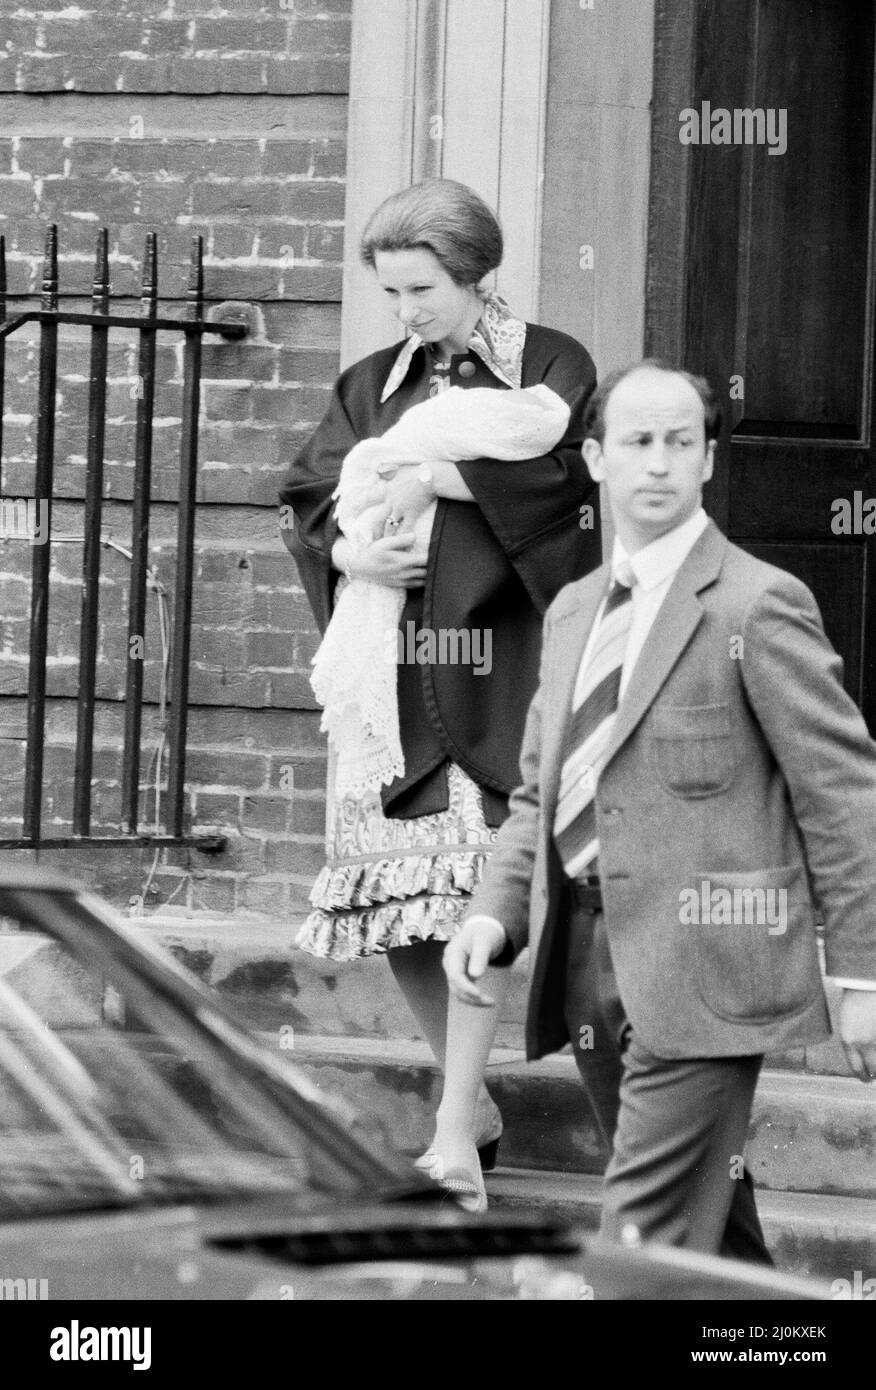 Ihre Königliche Hoheit Anne verlässt das St. Mary's Hospital in Paddington, London, nach der Geburt ihrer kleinen Tochter Prinzessin Zara. Sie wird von ihrem stets wachsamen Royal Detective begleitet. 18. Mai 1981. Stockfoto